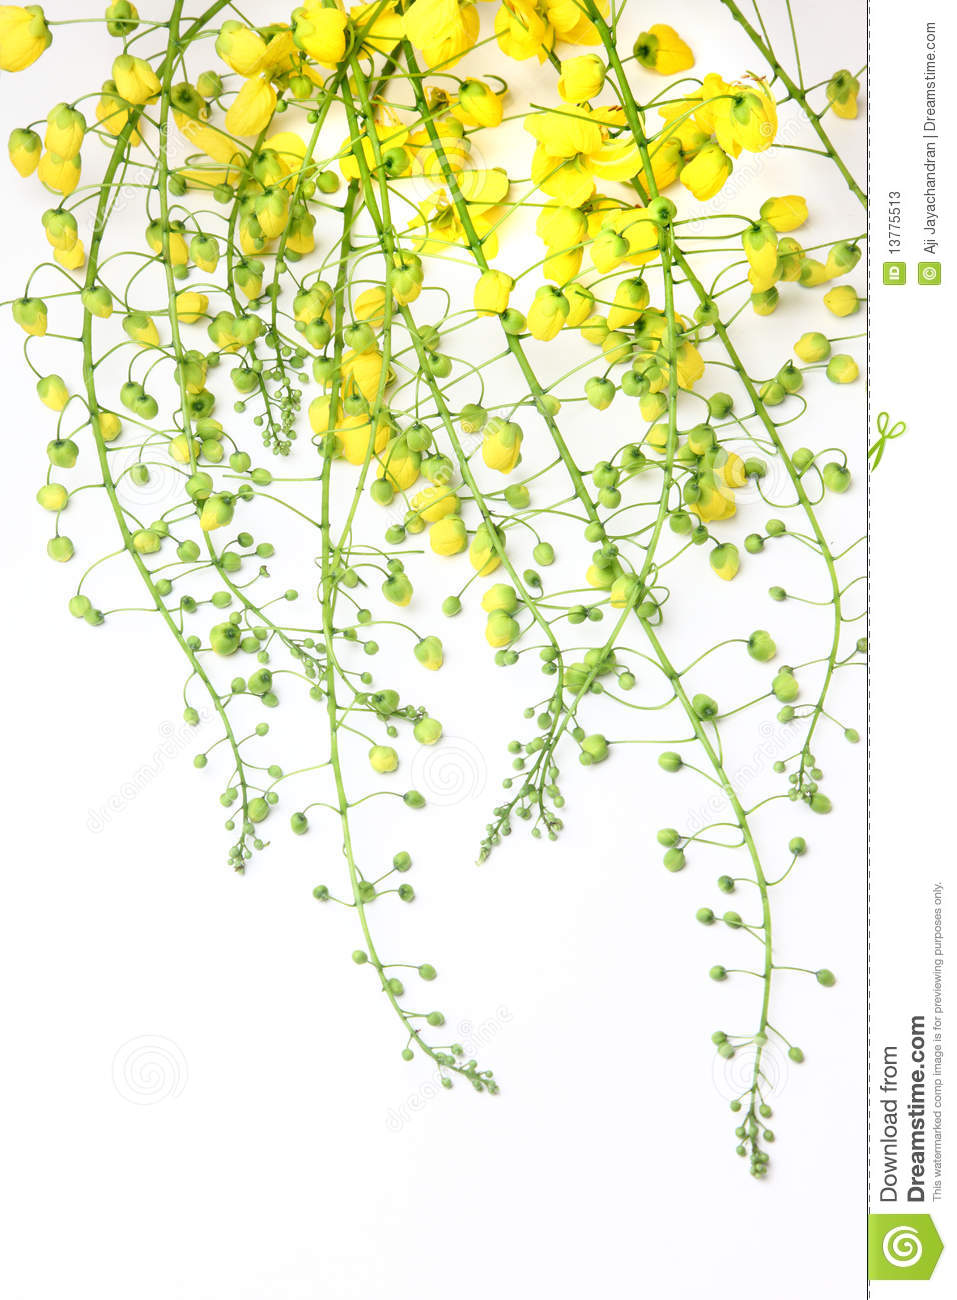 Golden Shower Flower Stock Photos.